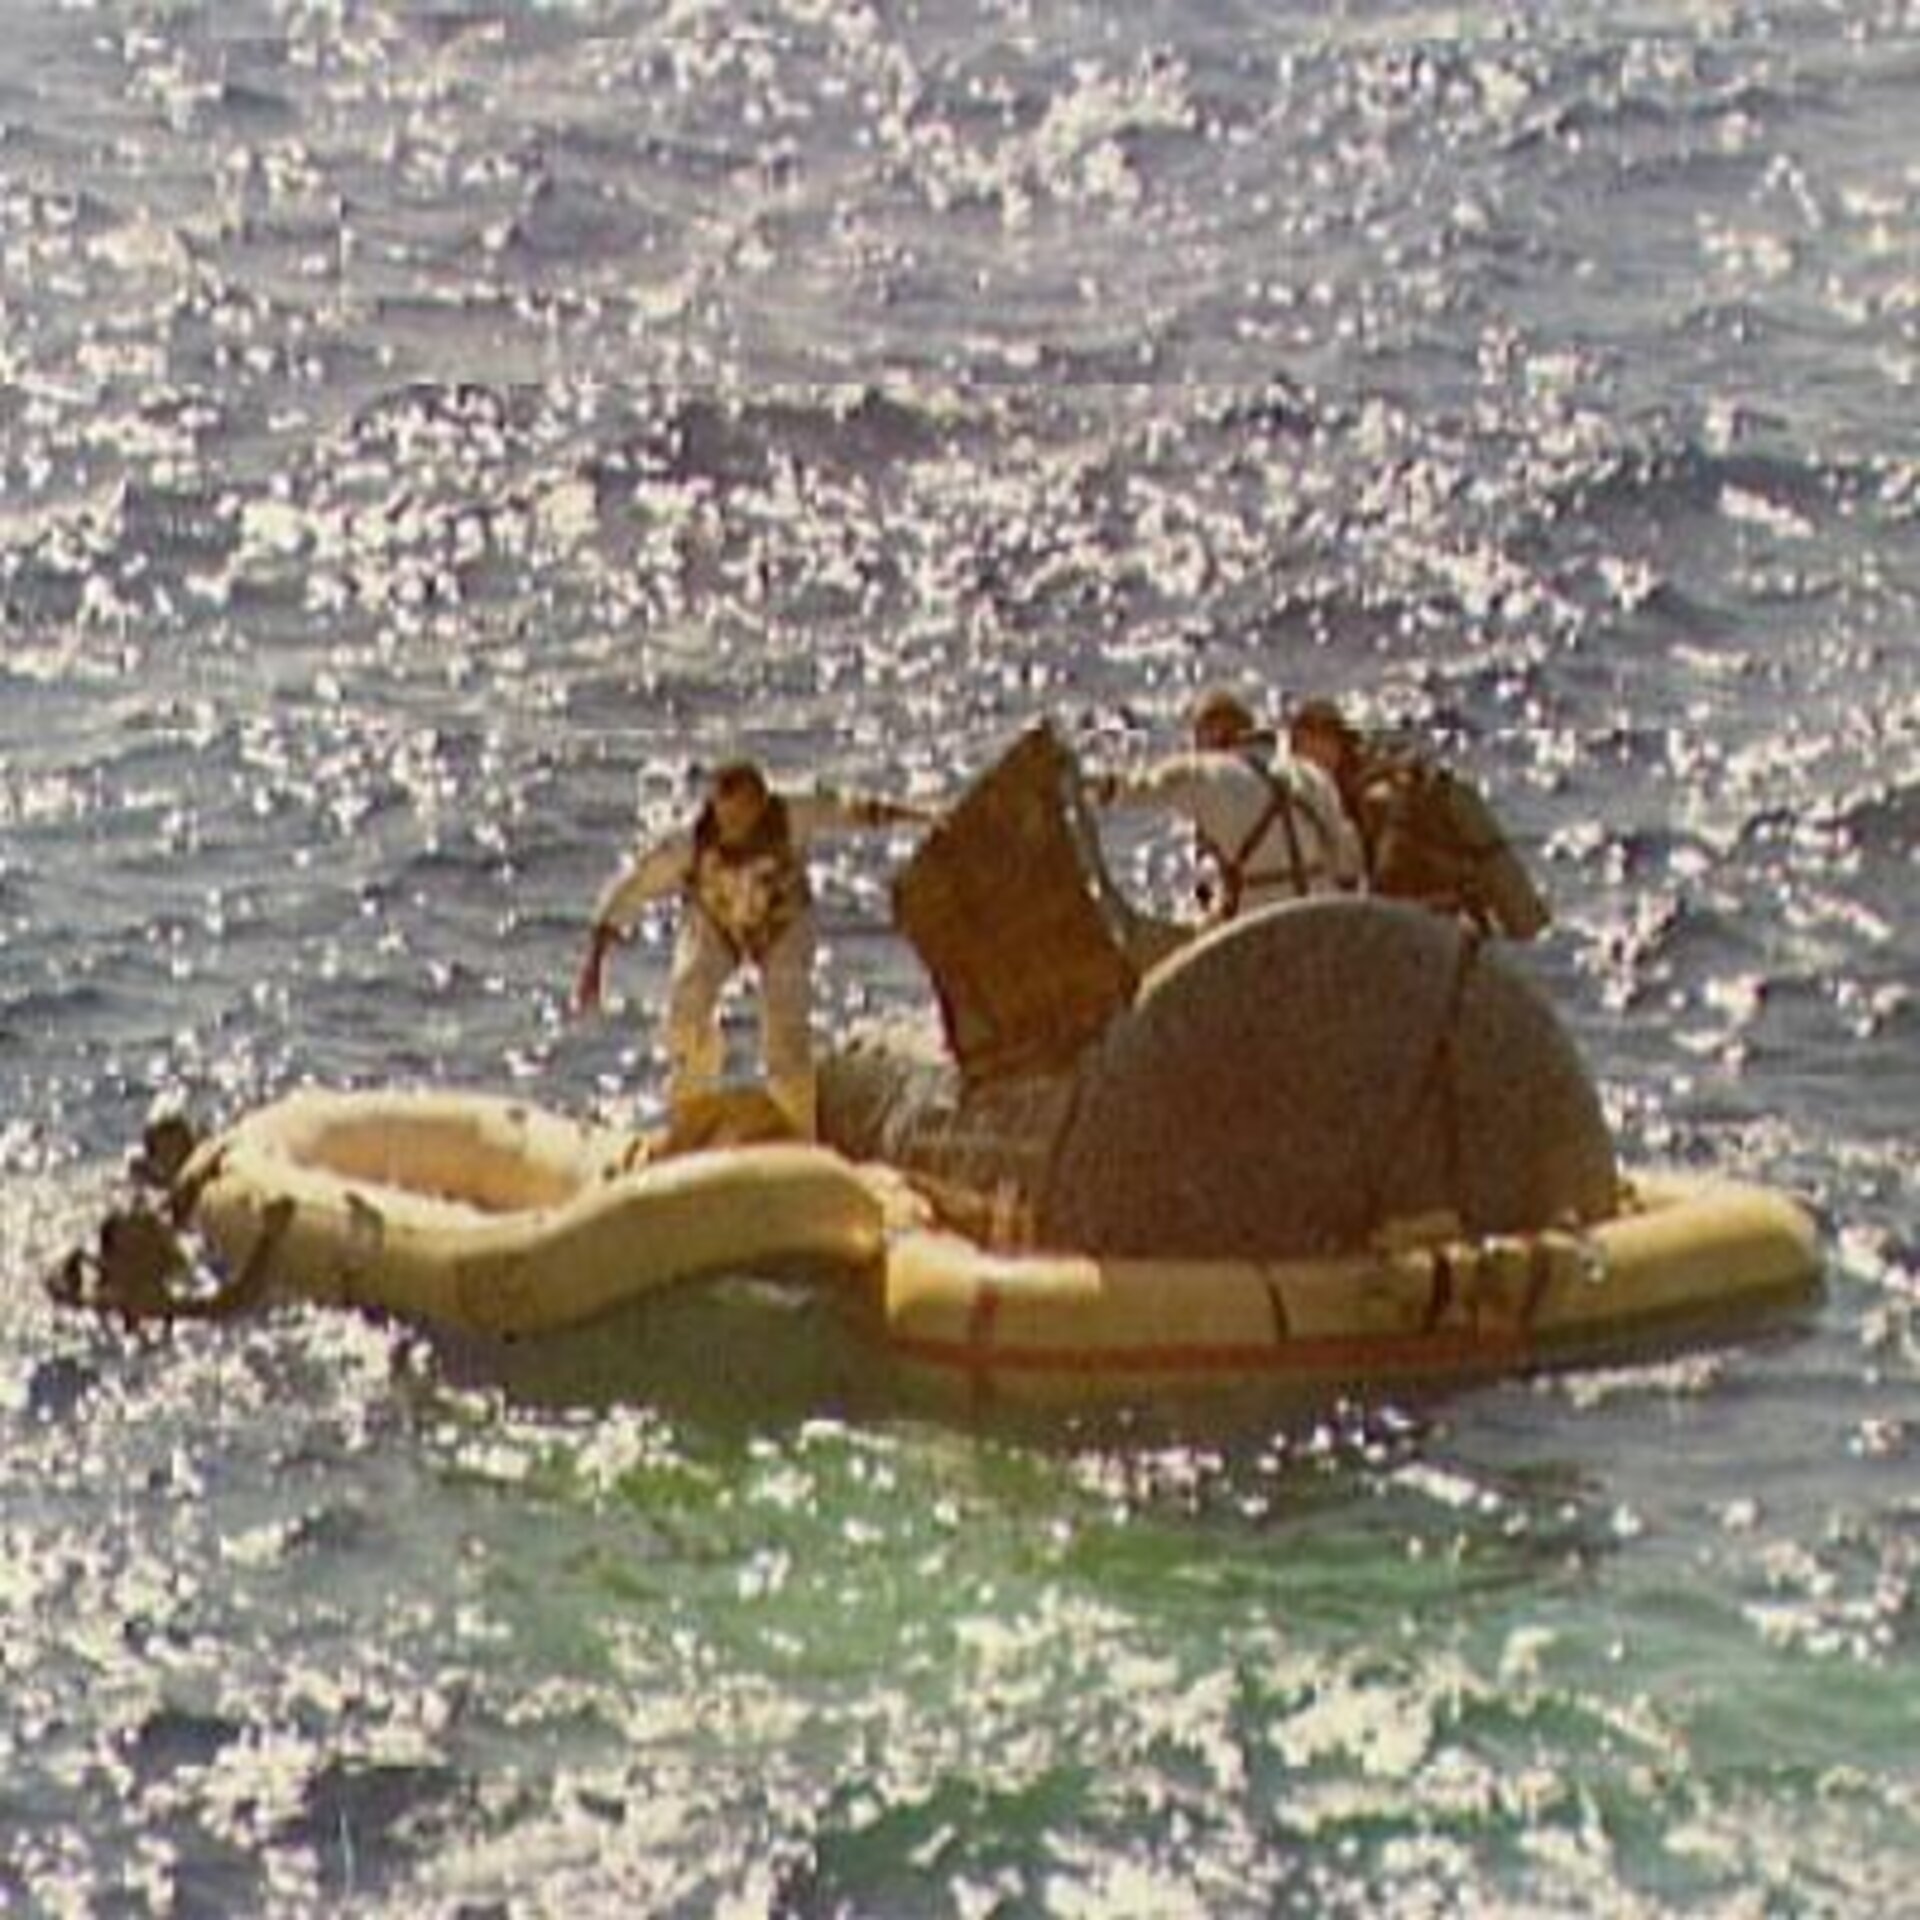 Splashdown for Gemini 5